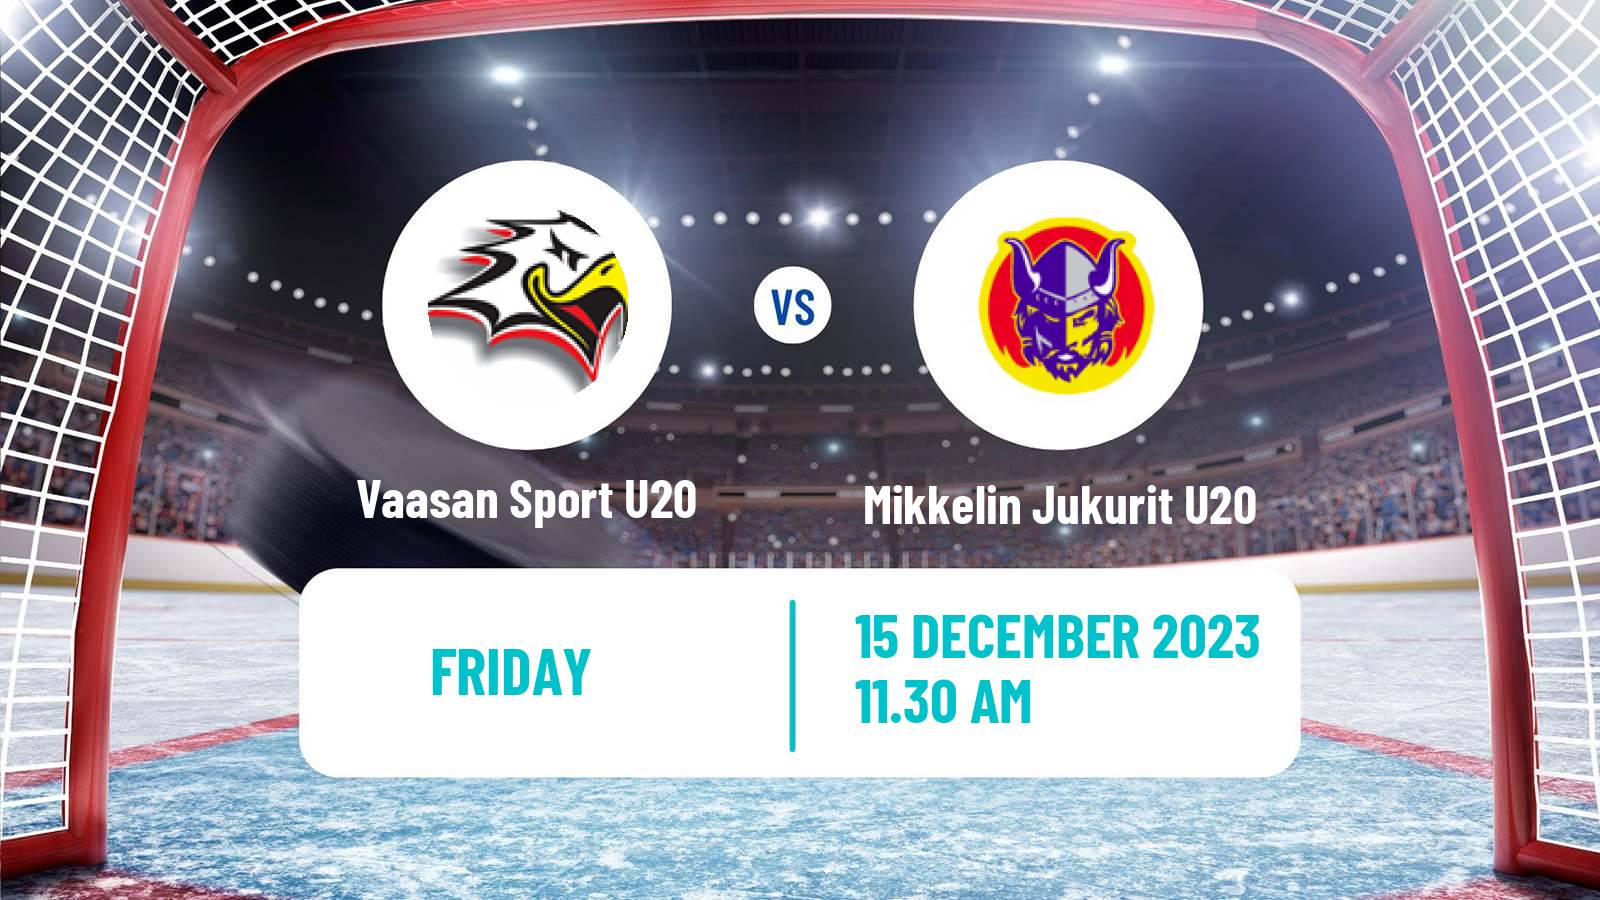 Hockey Finnish SM-sarja U20 Vaasan Sport U20 - Mikkelin Jukurit U20